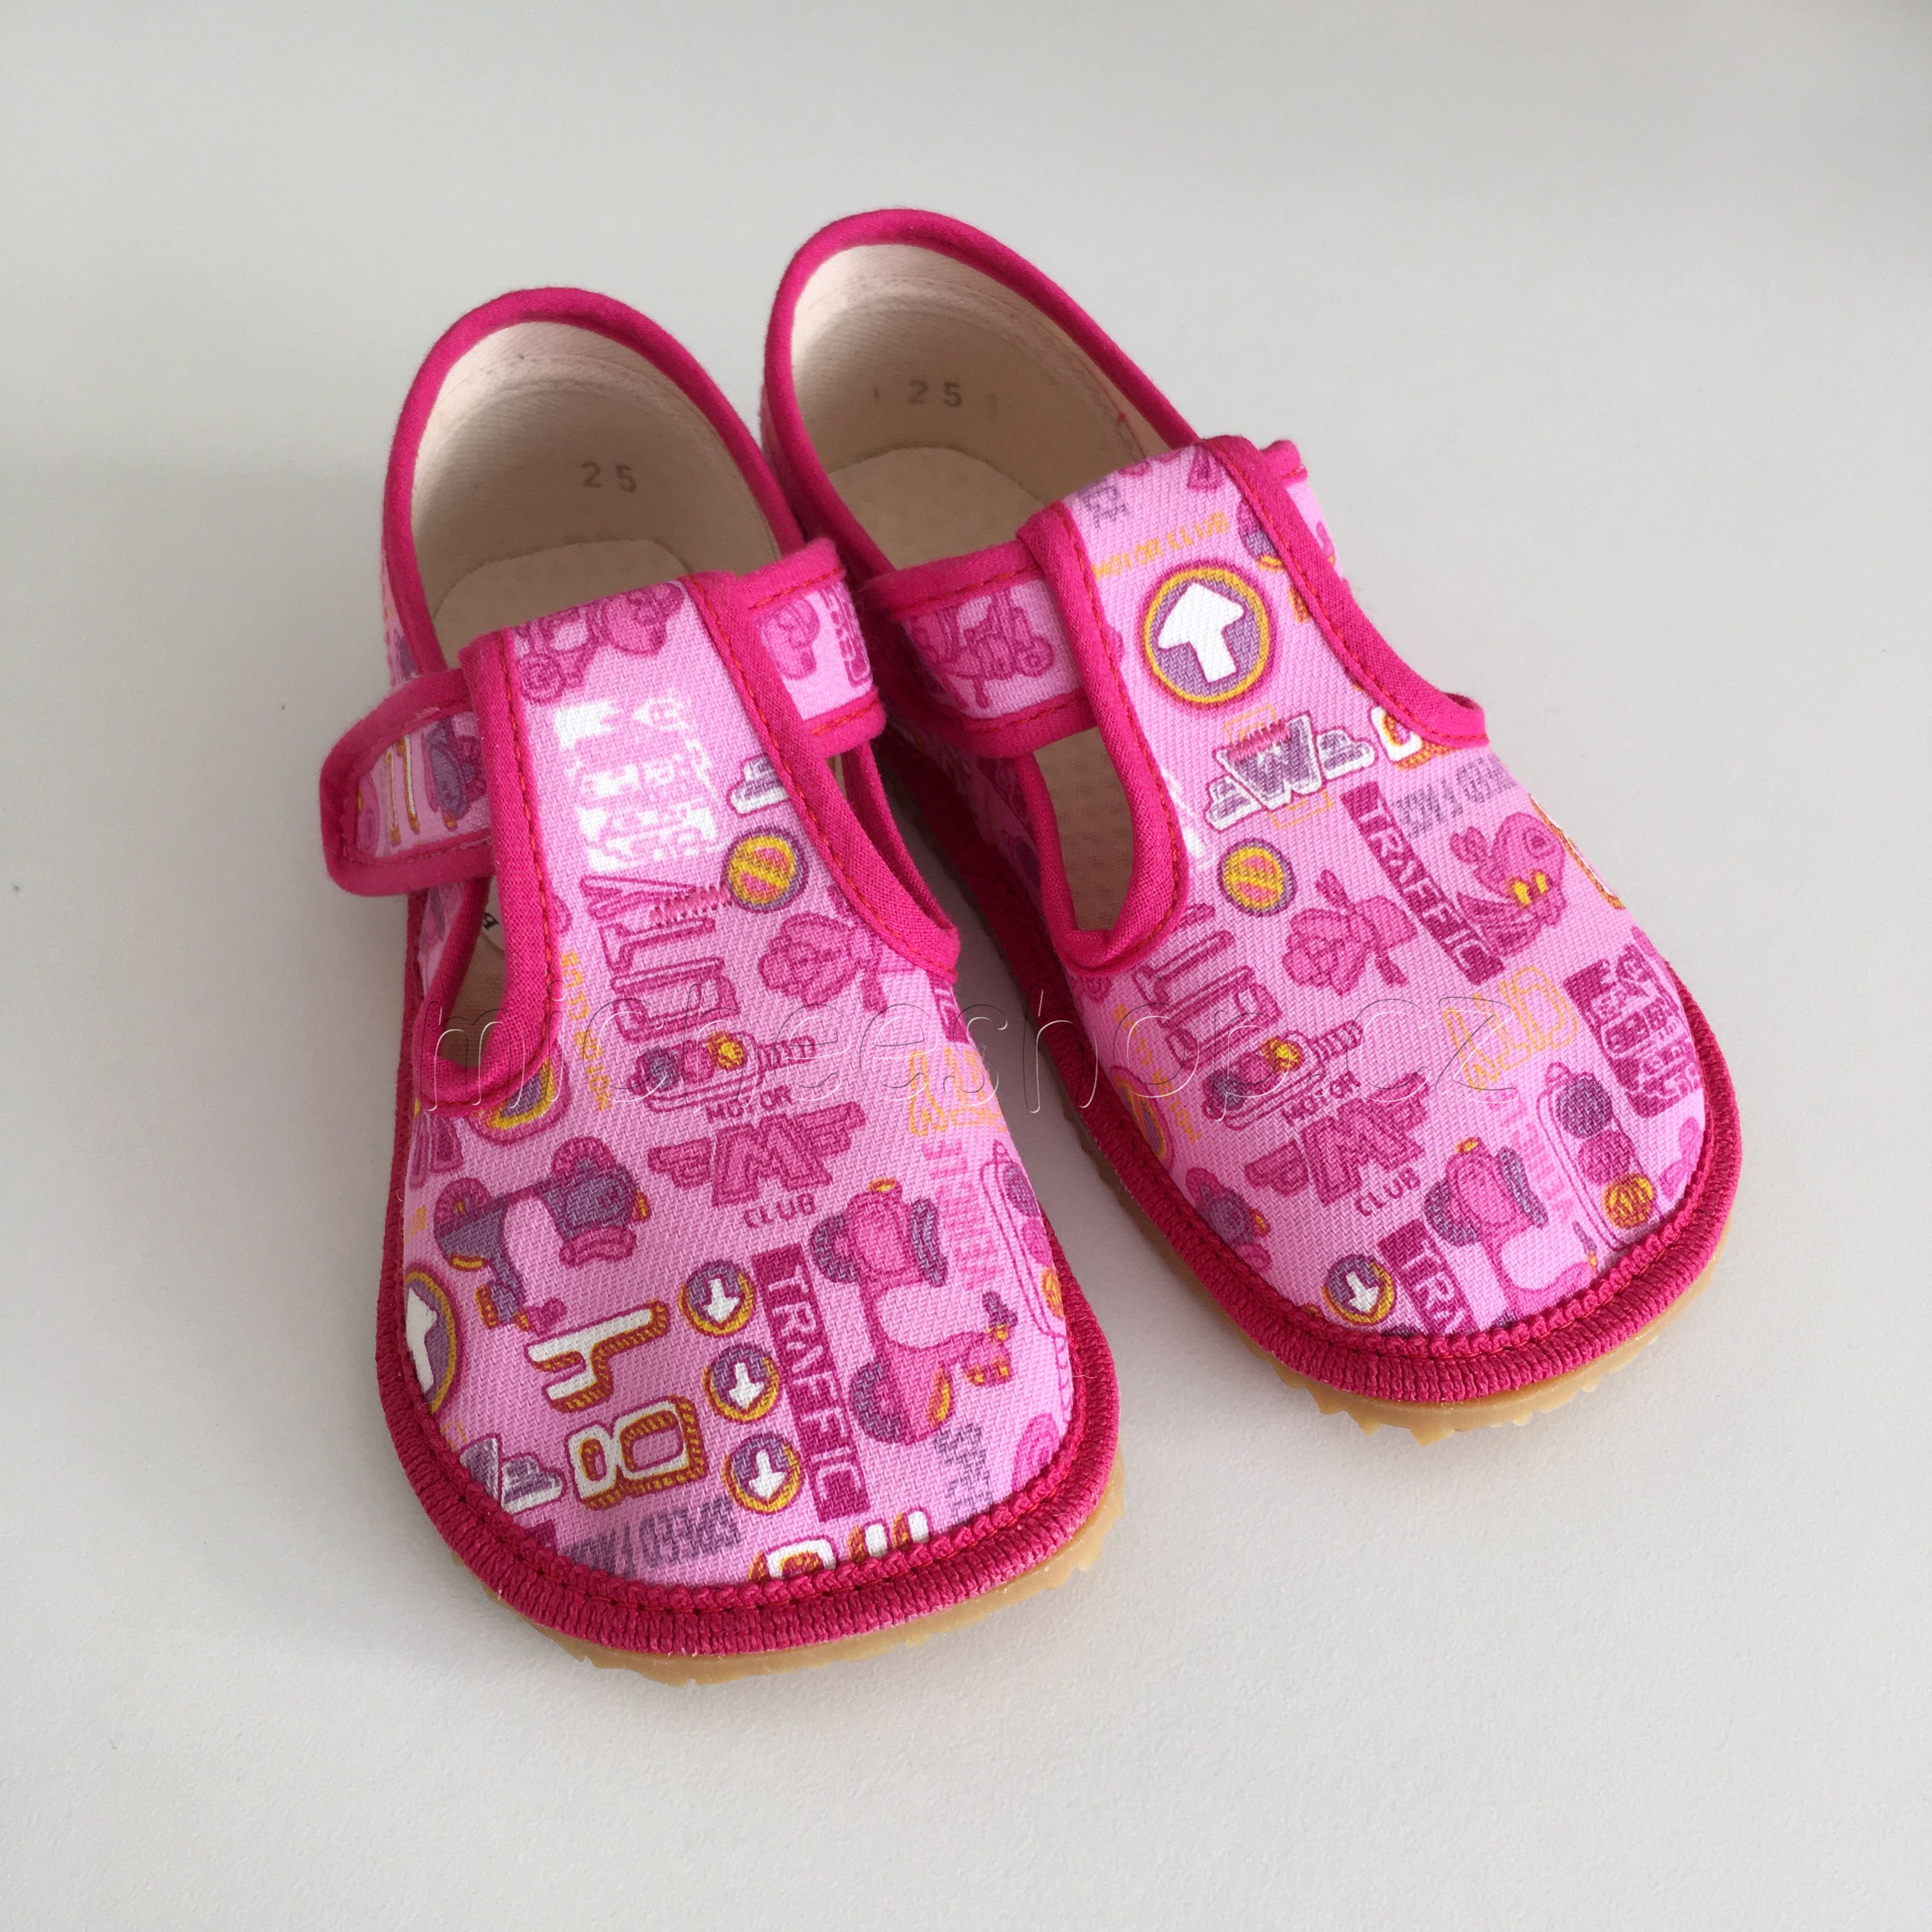 Beda Barefoot Textilní obuv BF 060010/W růžové znaky